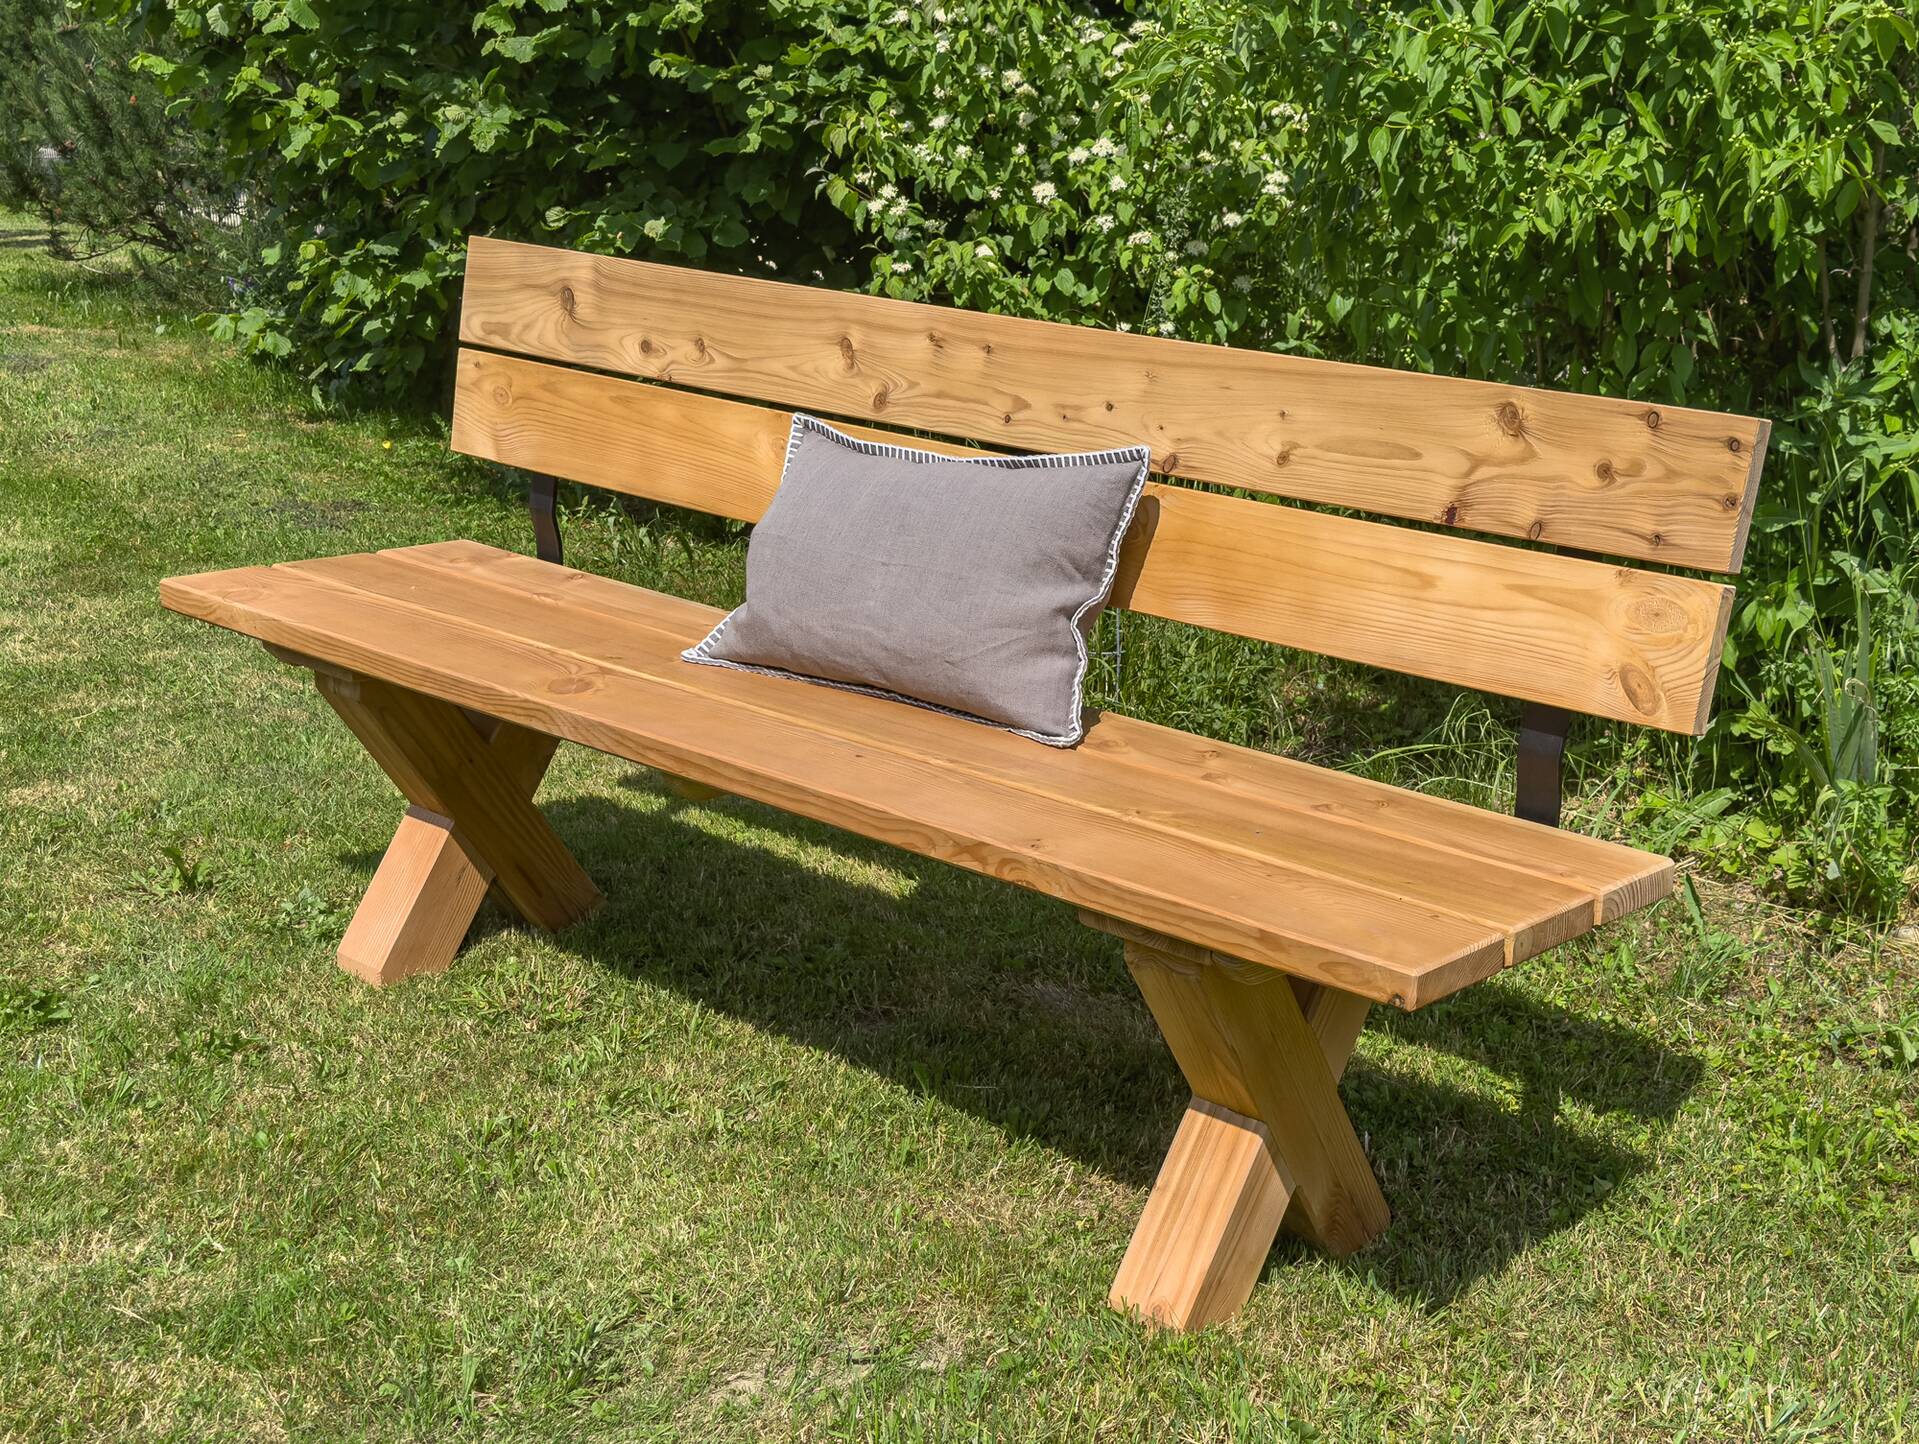 CANCUN Sitzbank / Gartenbank mit X-Beinen, Material Massivholz, Lärche natur 260 cm | mit Rückenlehne